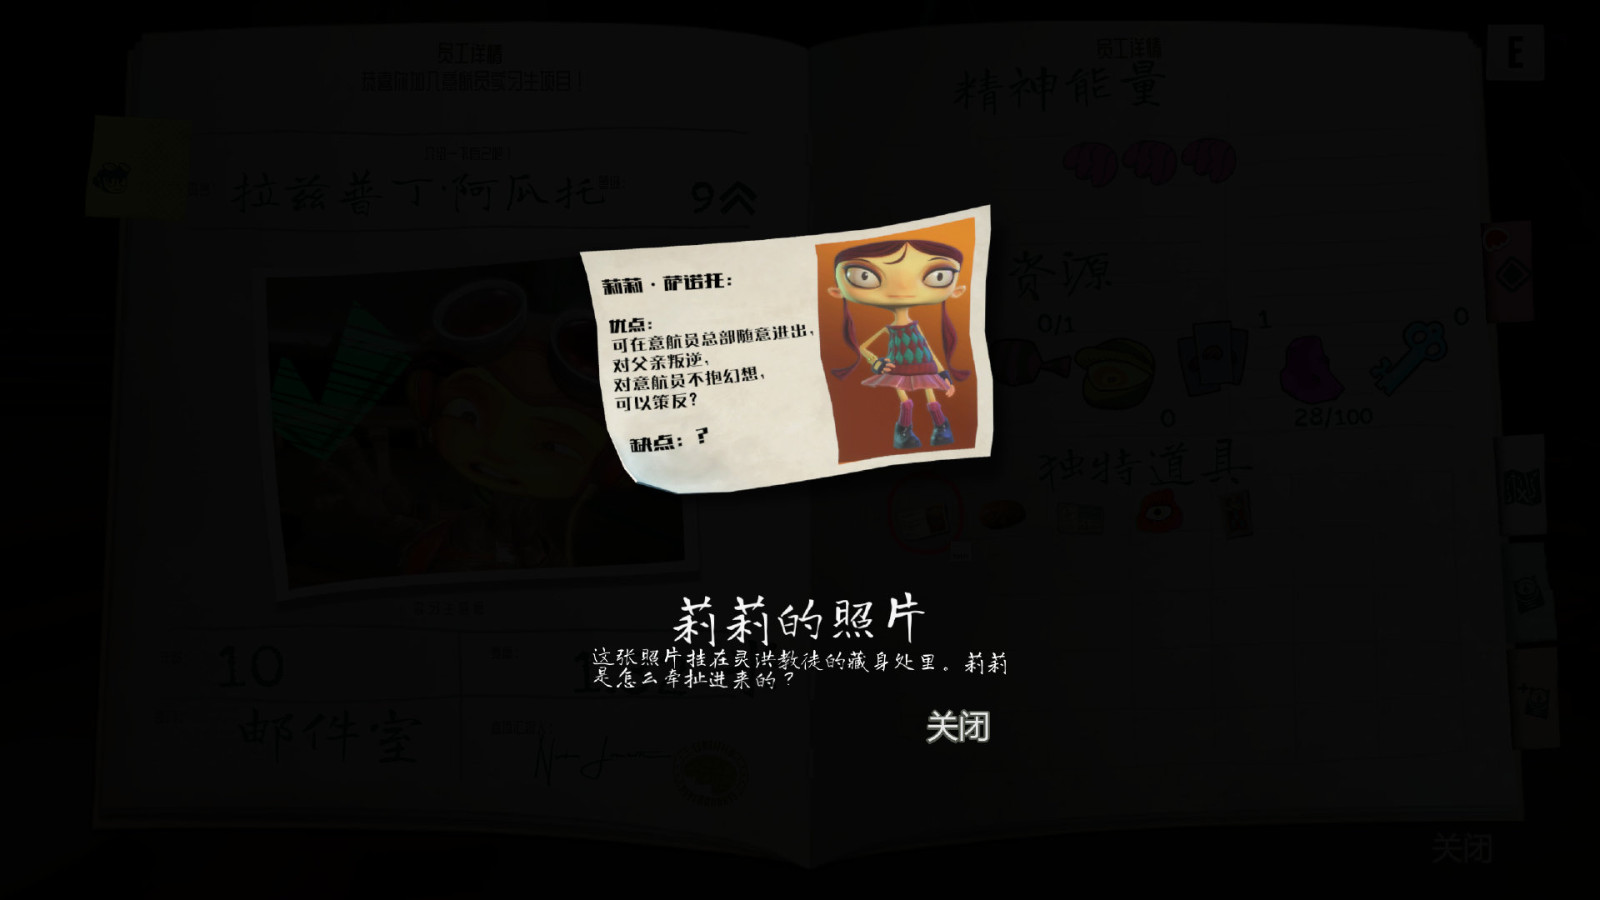 《意航員2》中文截圖公布 中文支持即將上線